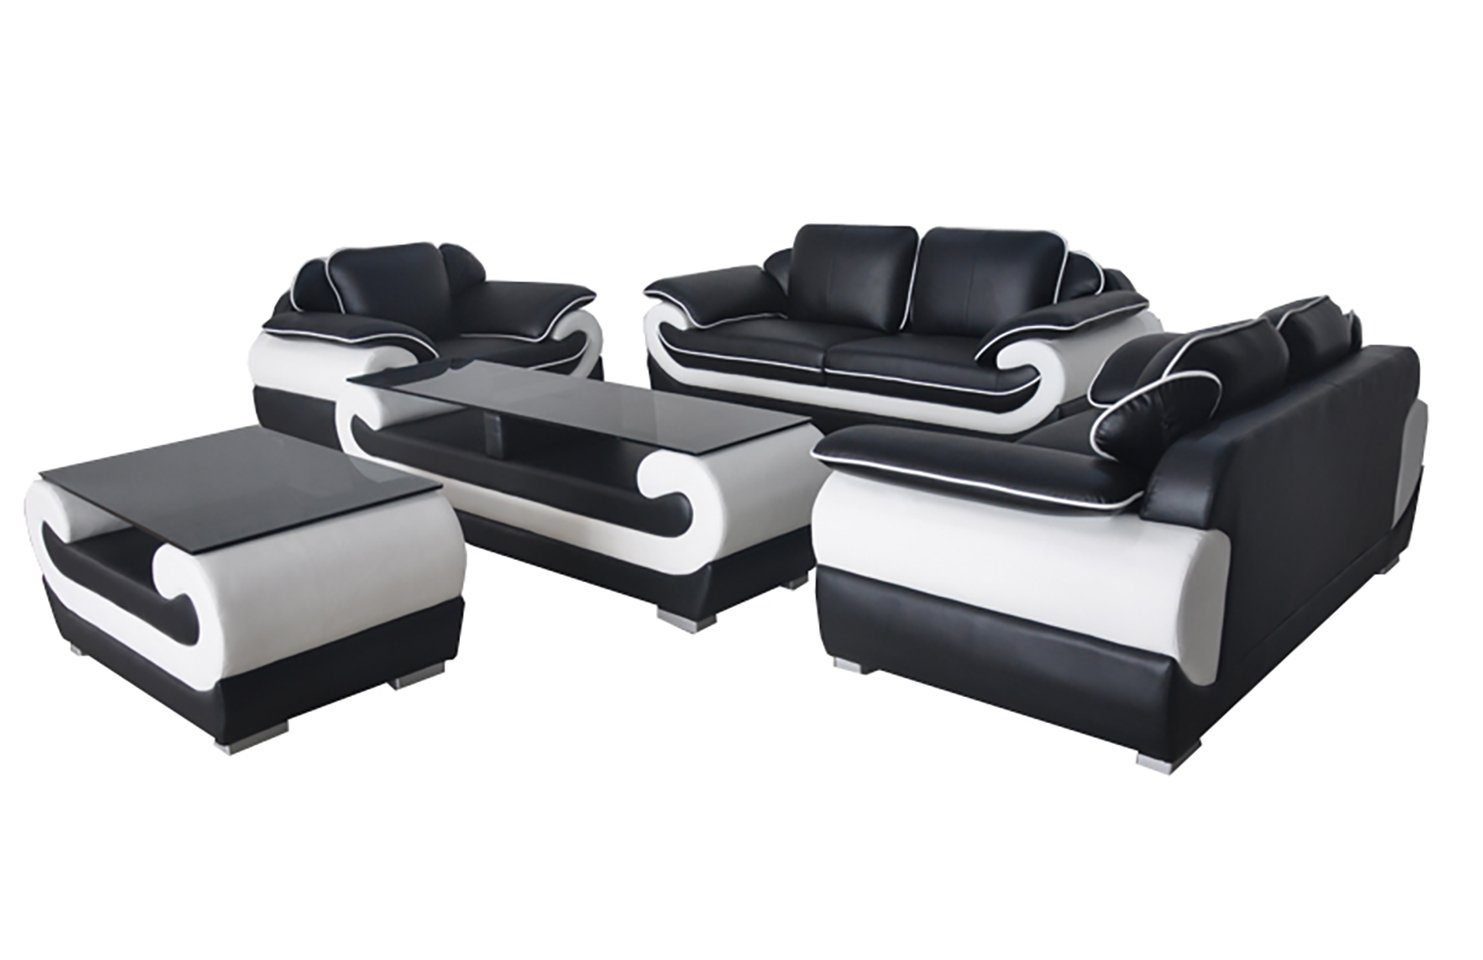 JVmoebel Sofa Sofa Couch Garnitur Sitz Polster Komplett Set 3+2+1 Sofas Design, Made in Europe SchwarzWeiß